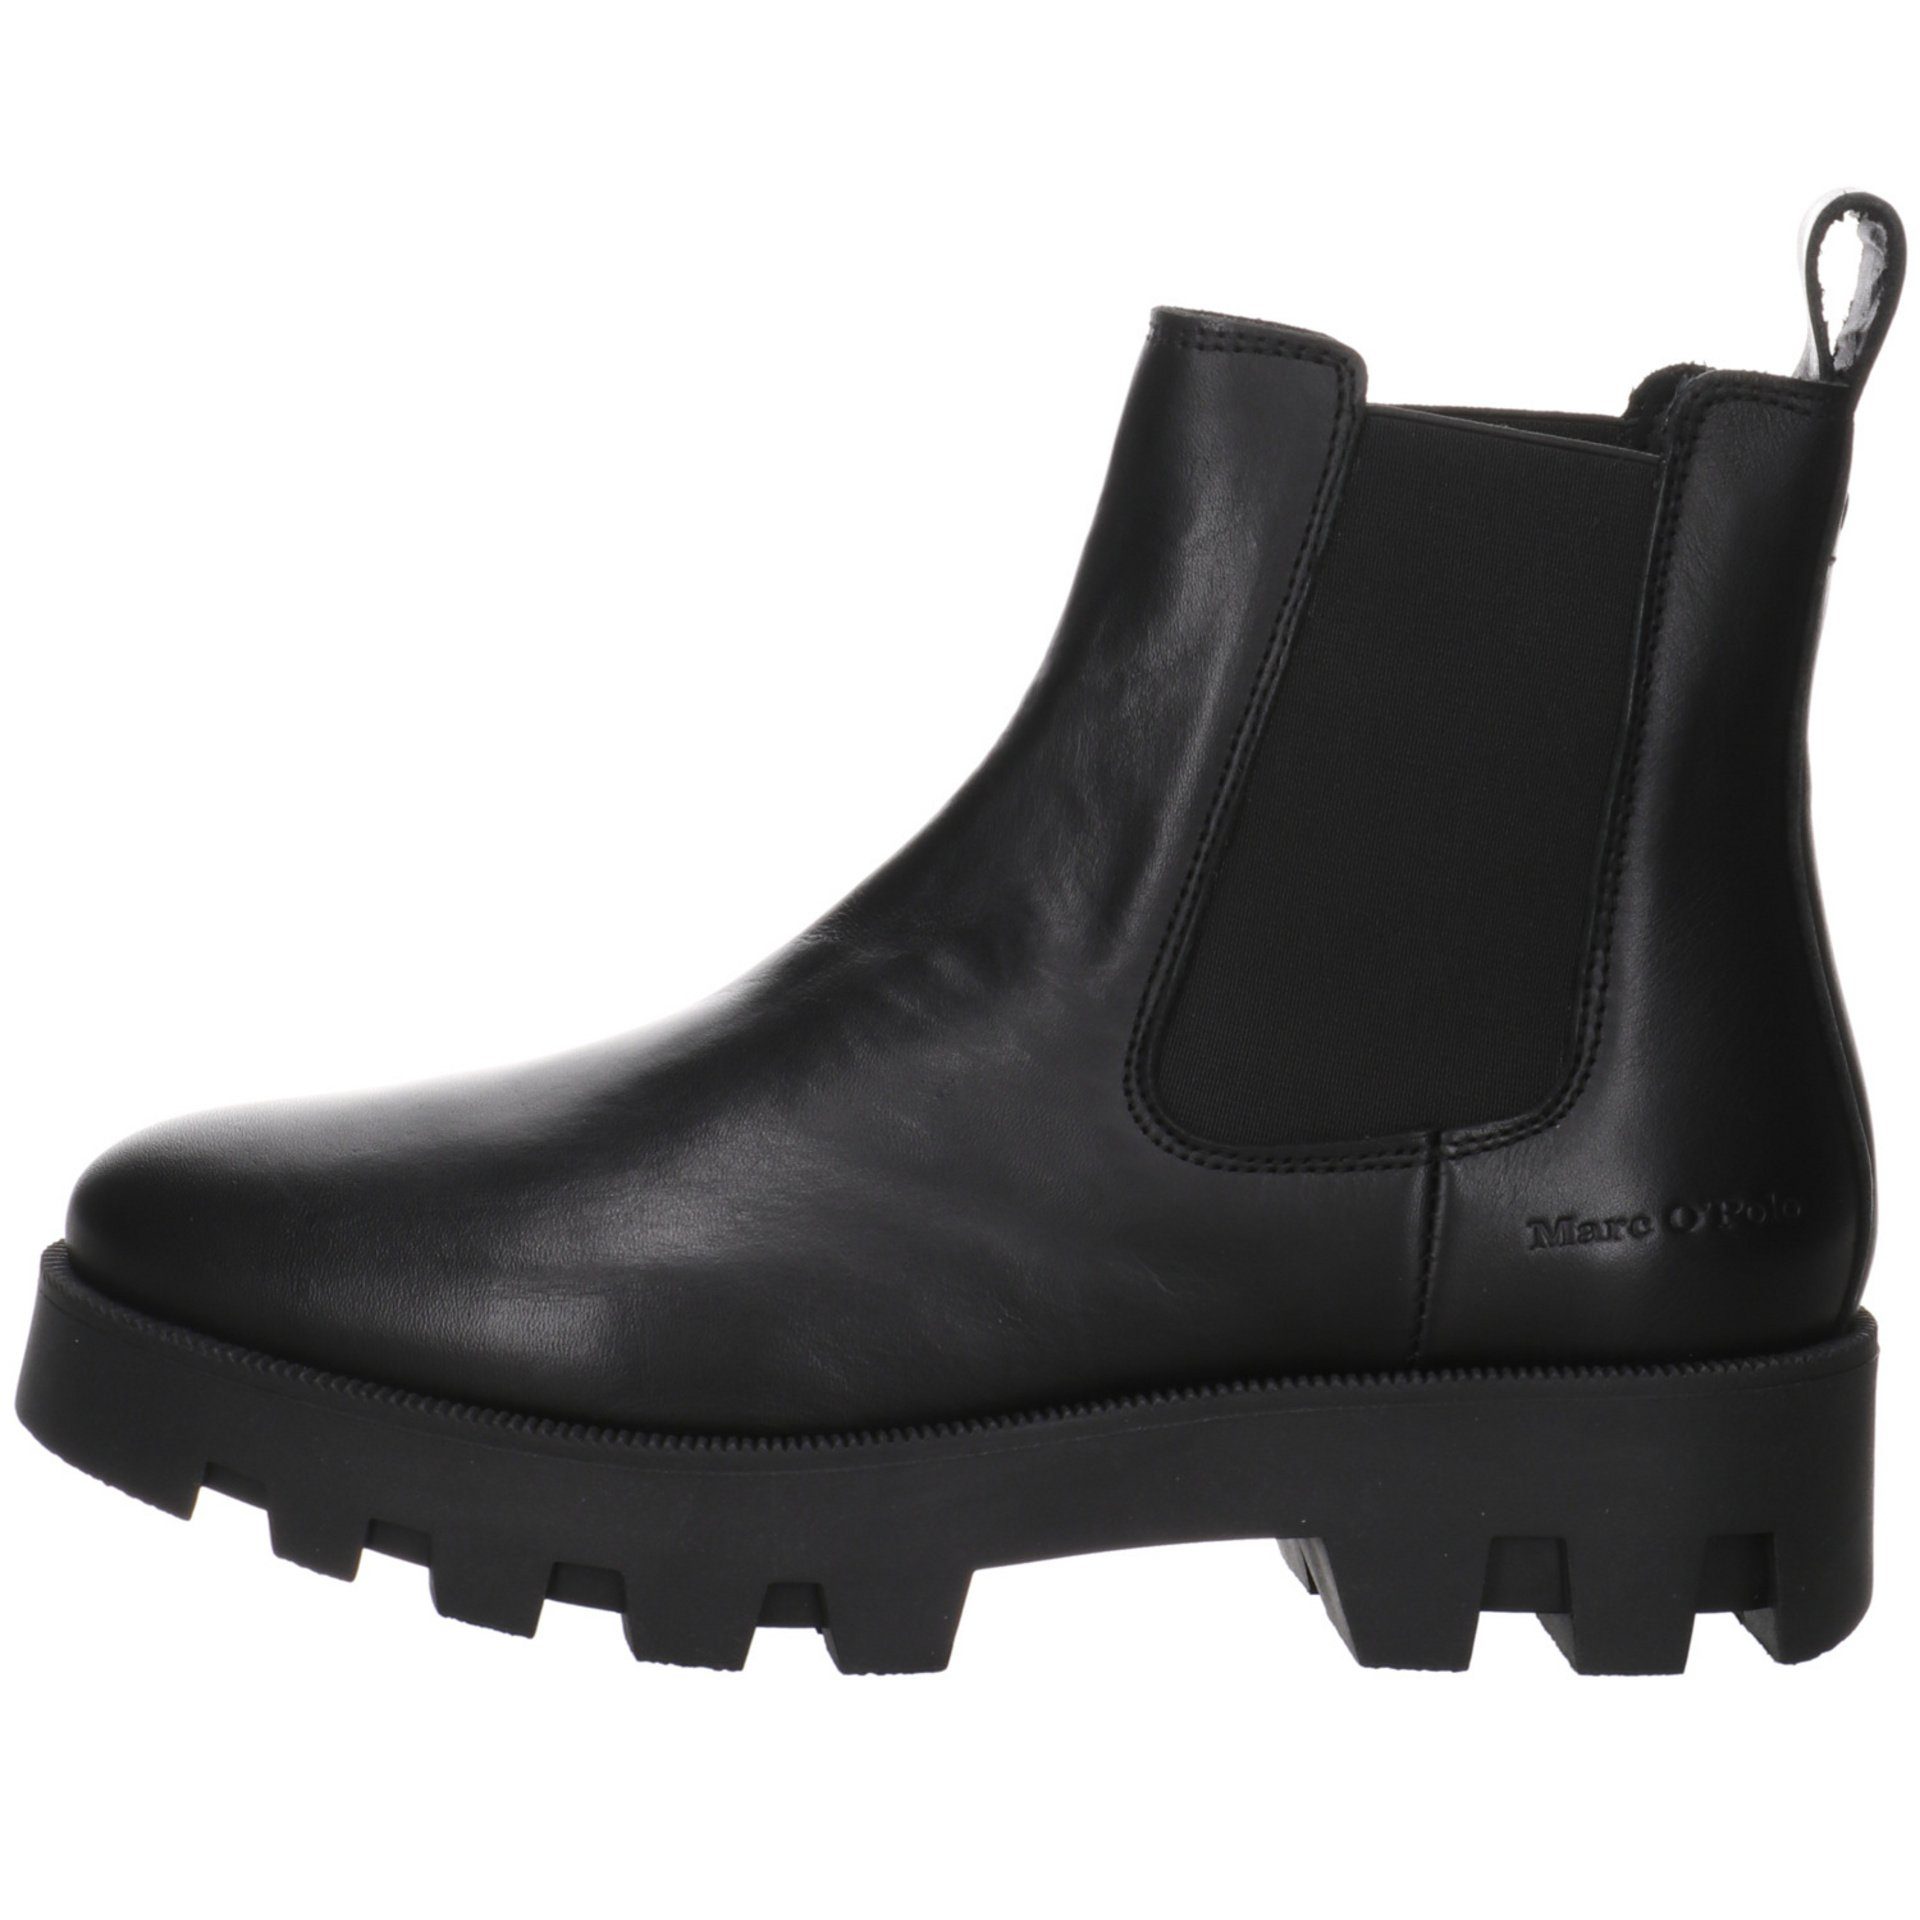 Chelsea-Boots Stiefelette Damen Stiefeletten Leder-/Textilkombination Schuhe O'Polo Marc